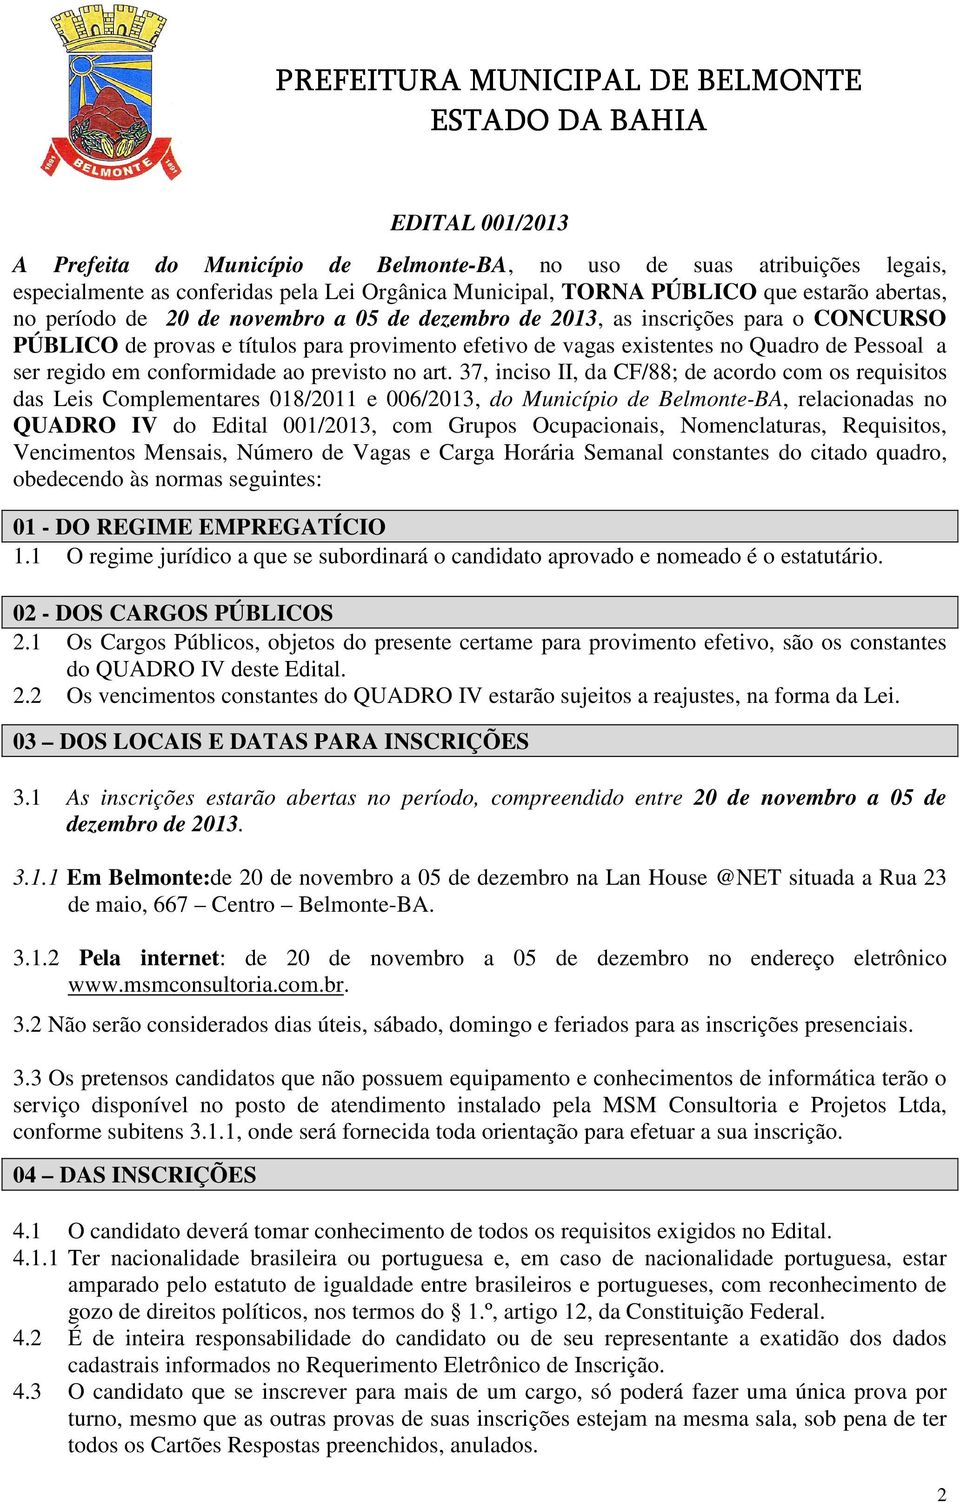 art. 37, inciso II, da CF/88; de acordo com os requisitos das Leis Complementares 018/11 e 006/13, do Município de Belmonte-BA, relacionadas no QUADRO IV do Edital 001/13, com Grupos Ocupacionais,